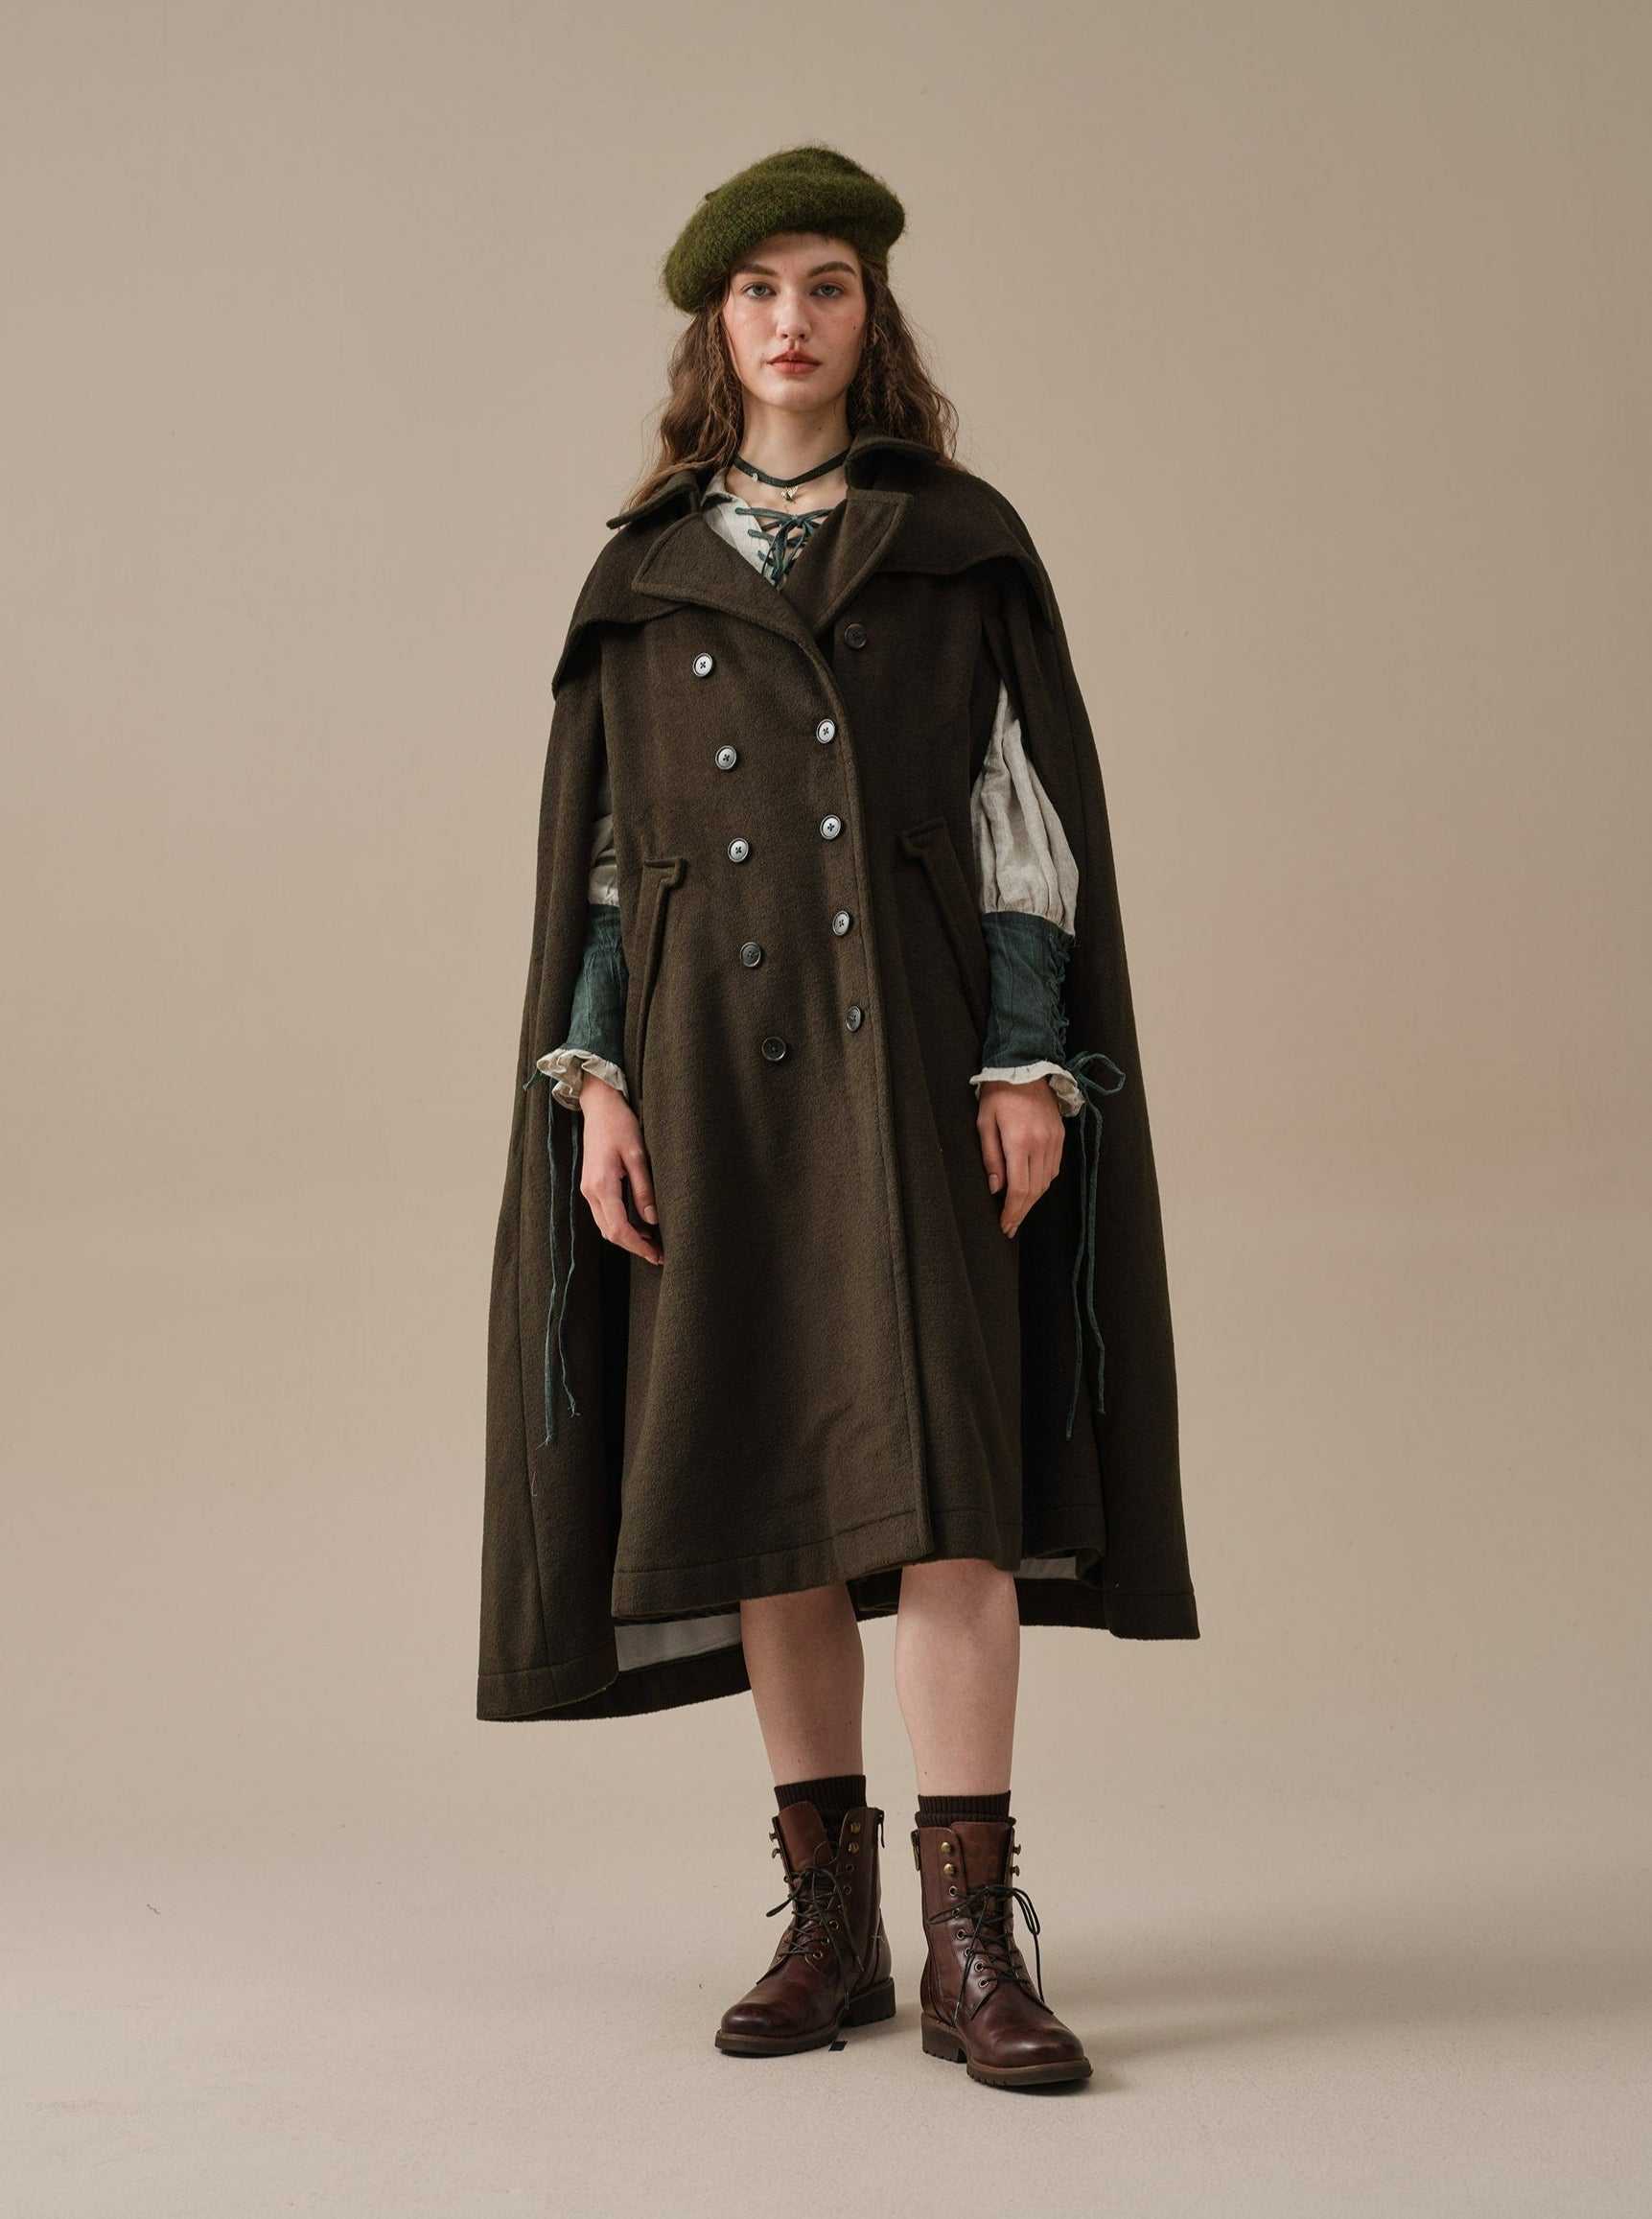 Linennaive, Jori 17 | 100% wool cloak coat